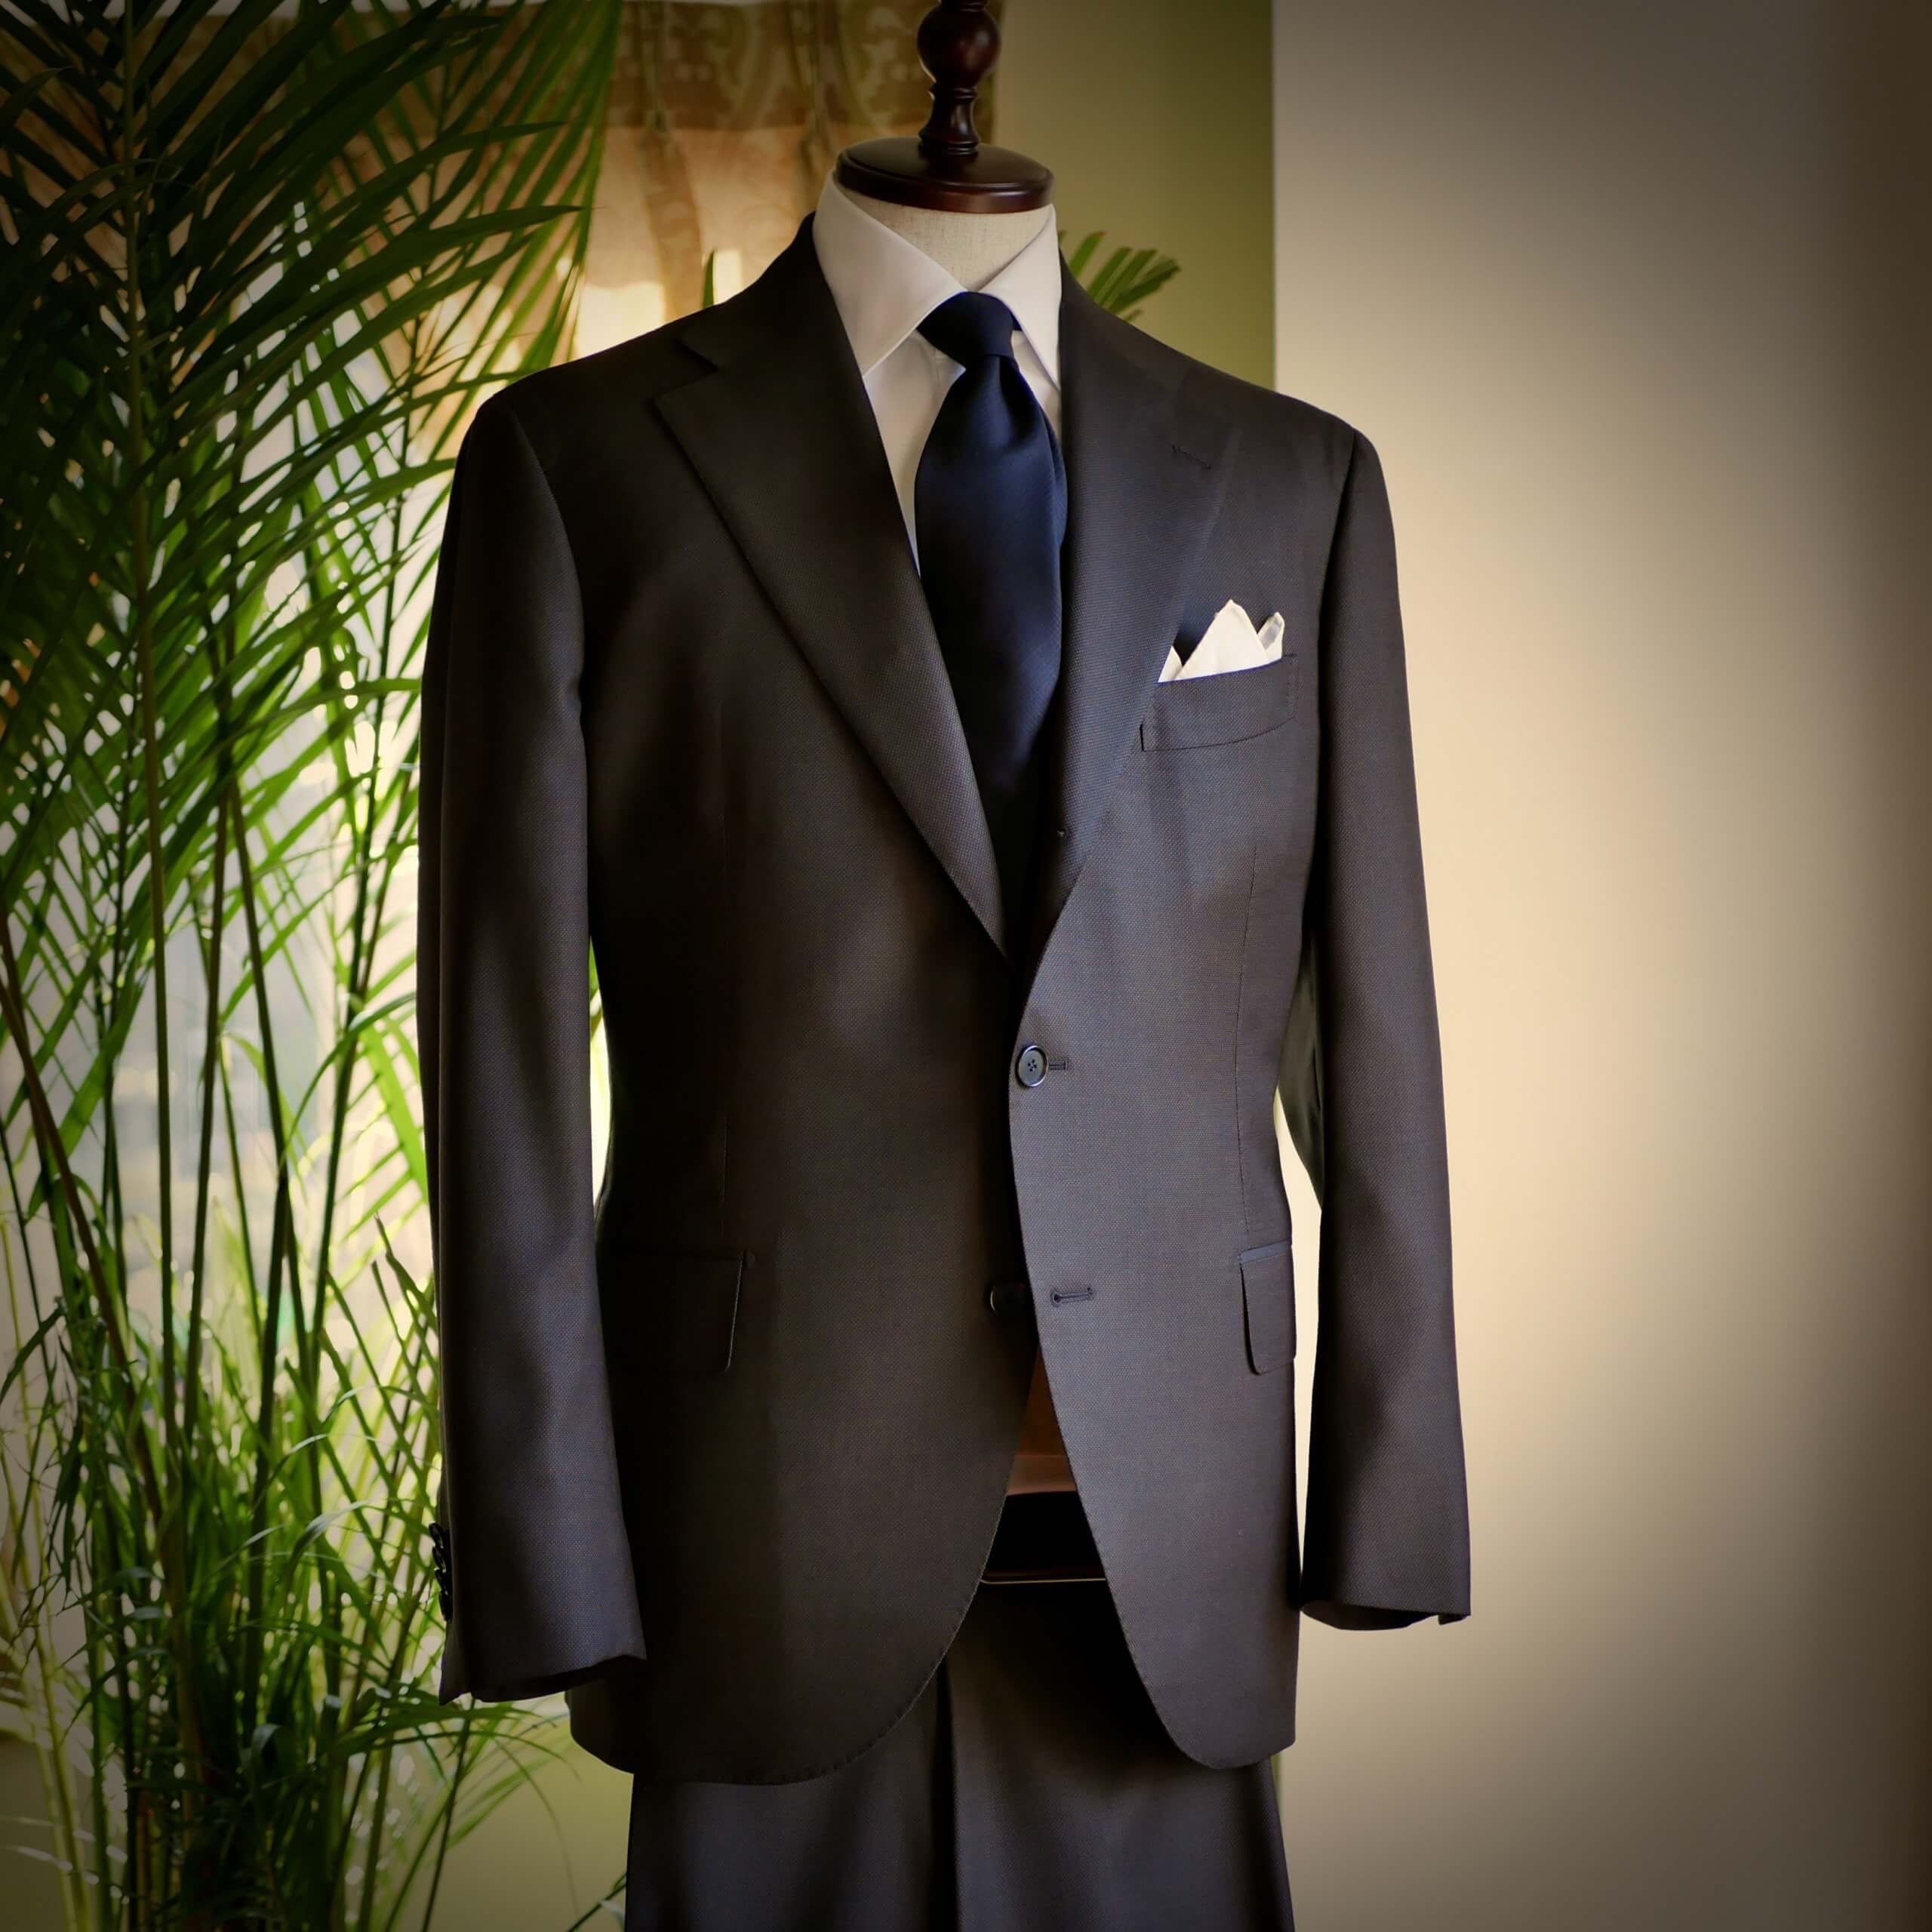 Suits_20201111_suits_2.jpg